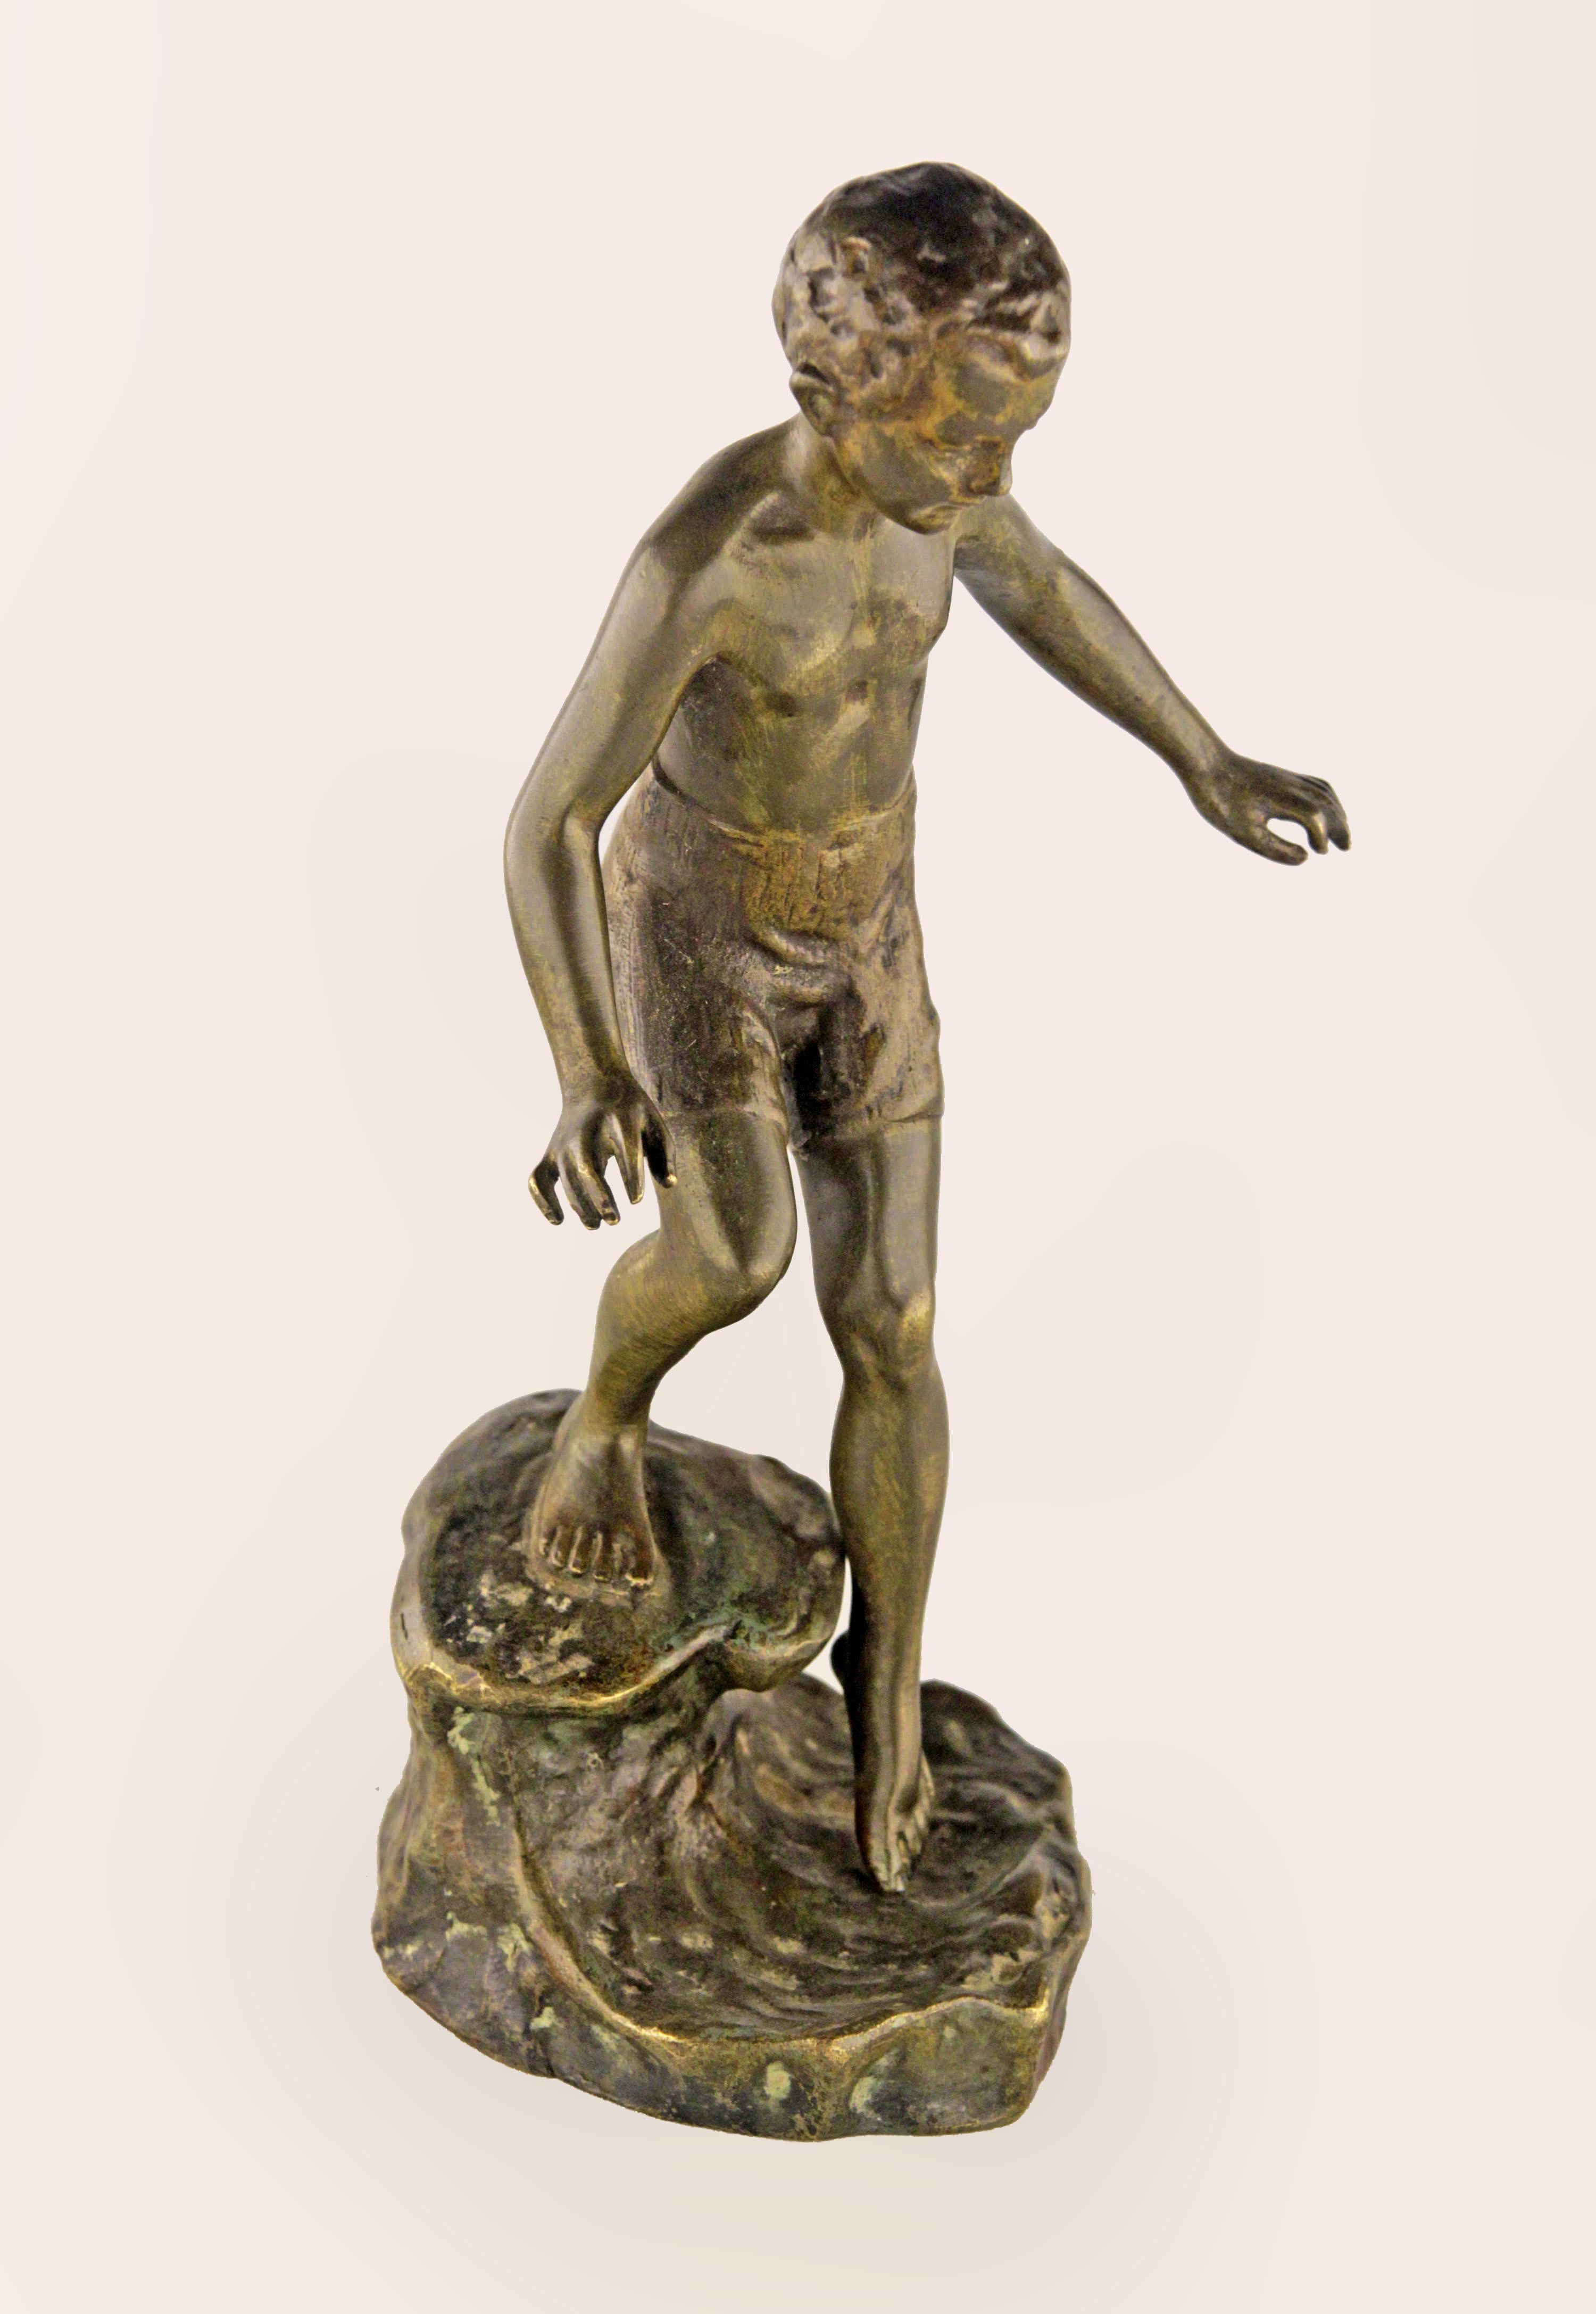 Belle-Époque-Bronzeskulptur mit grünlicher Patina aus dem 19. Jahrhundert, die einen Jungen darstellt, der ins Wasser geht, vom Bildhauer Ruffino Besserdich

von: Ruffino Besserdich
MATERIAL: Bronze, Kupfer, Metall
Technik: patiniert, gegossen,